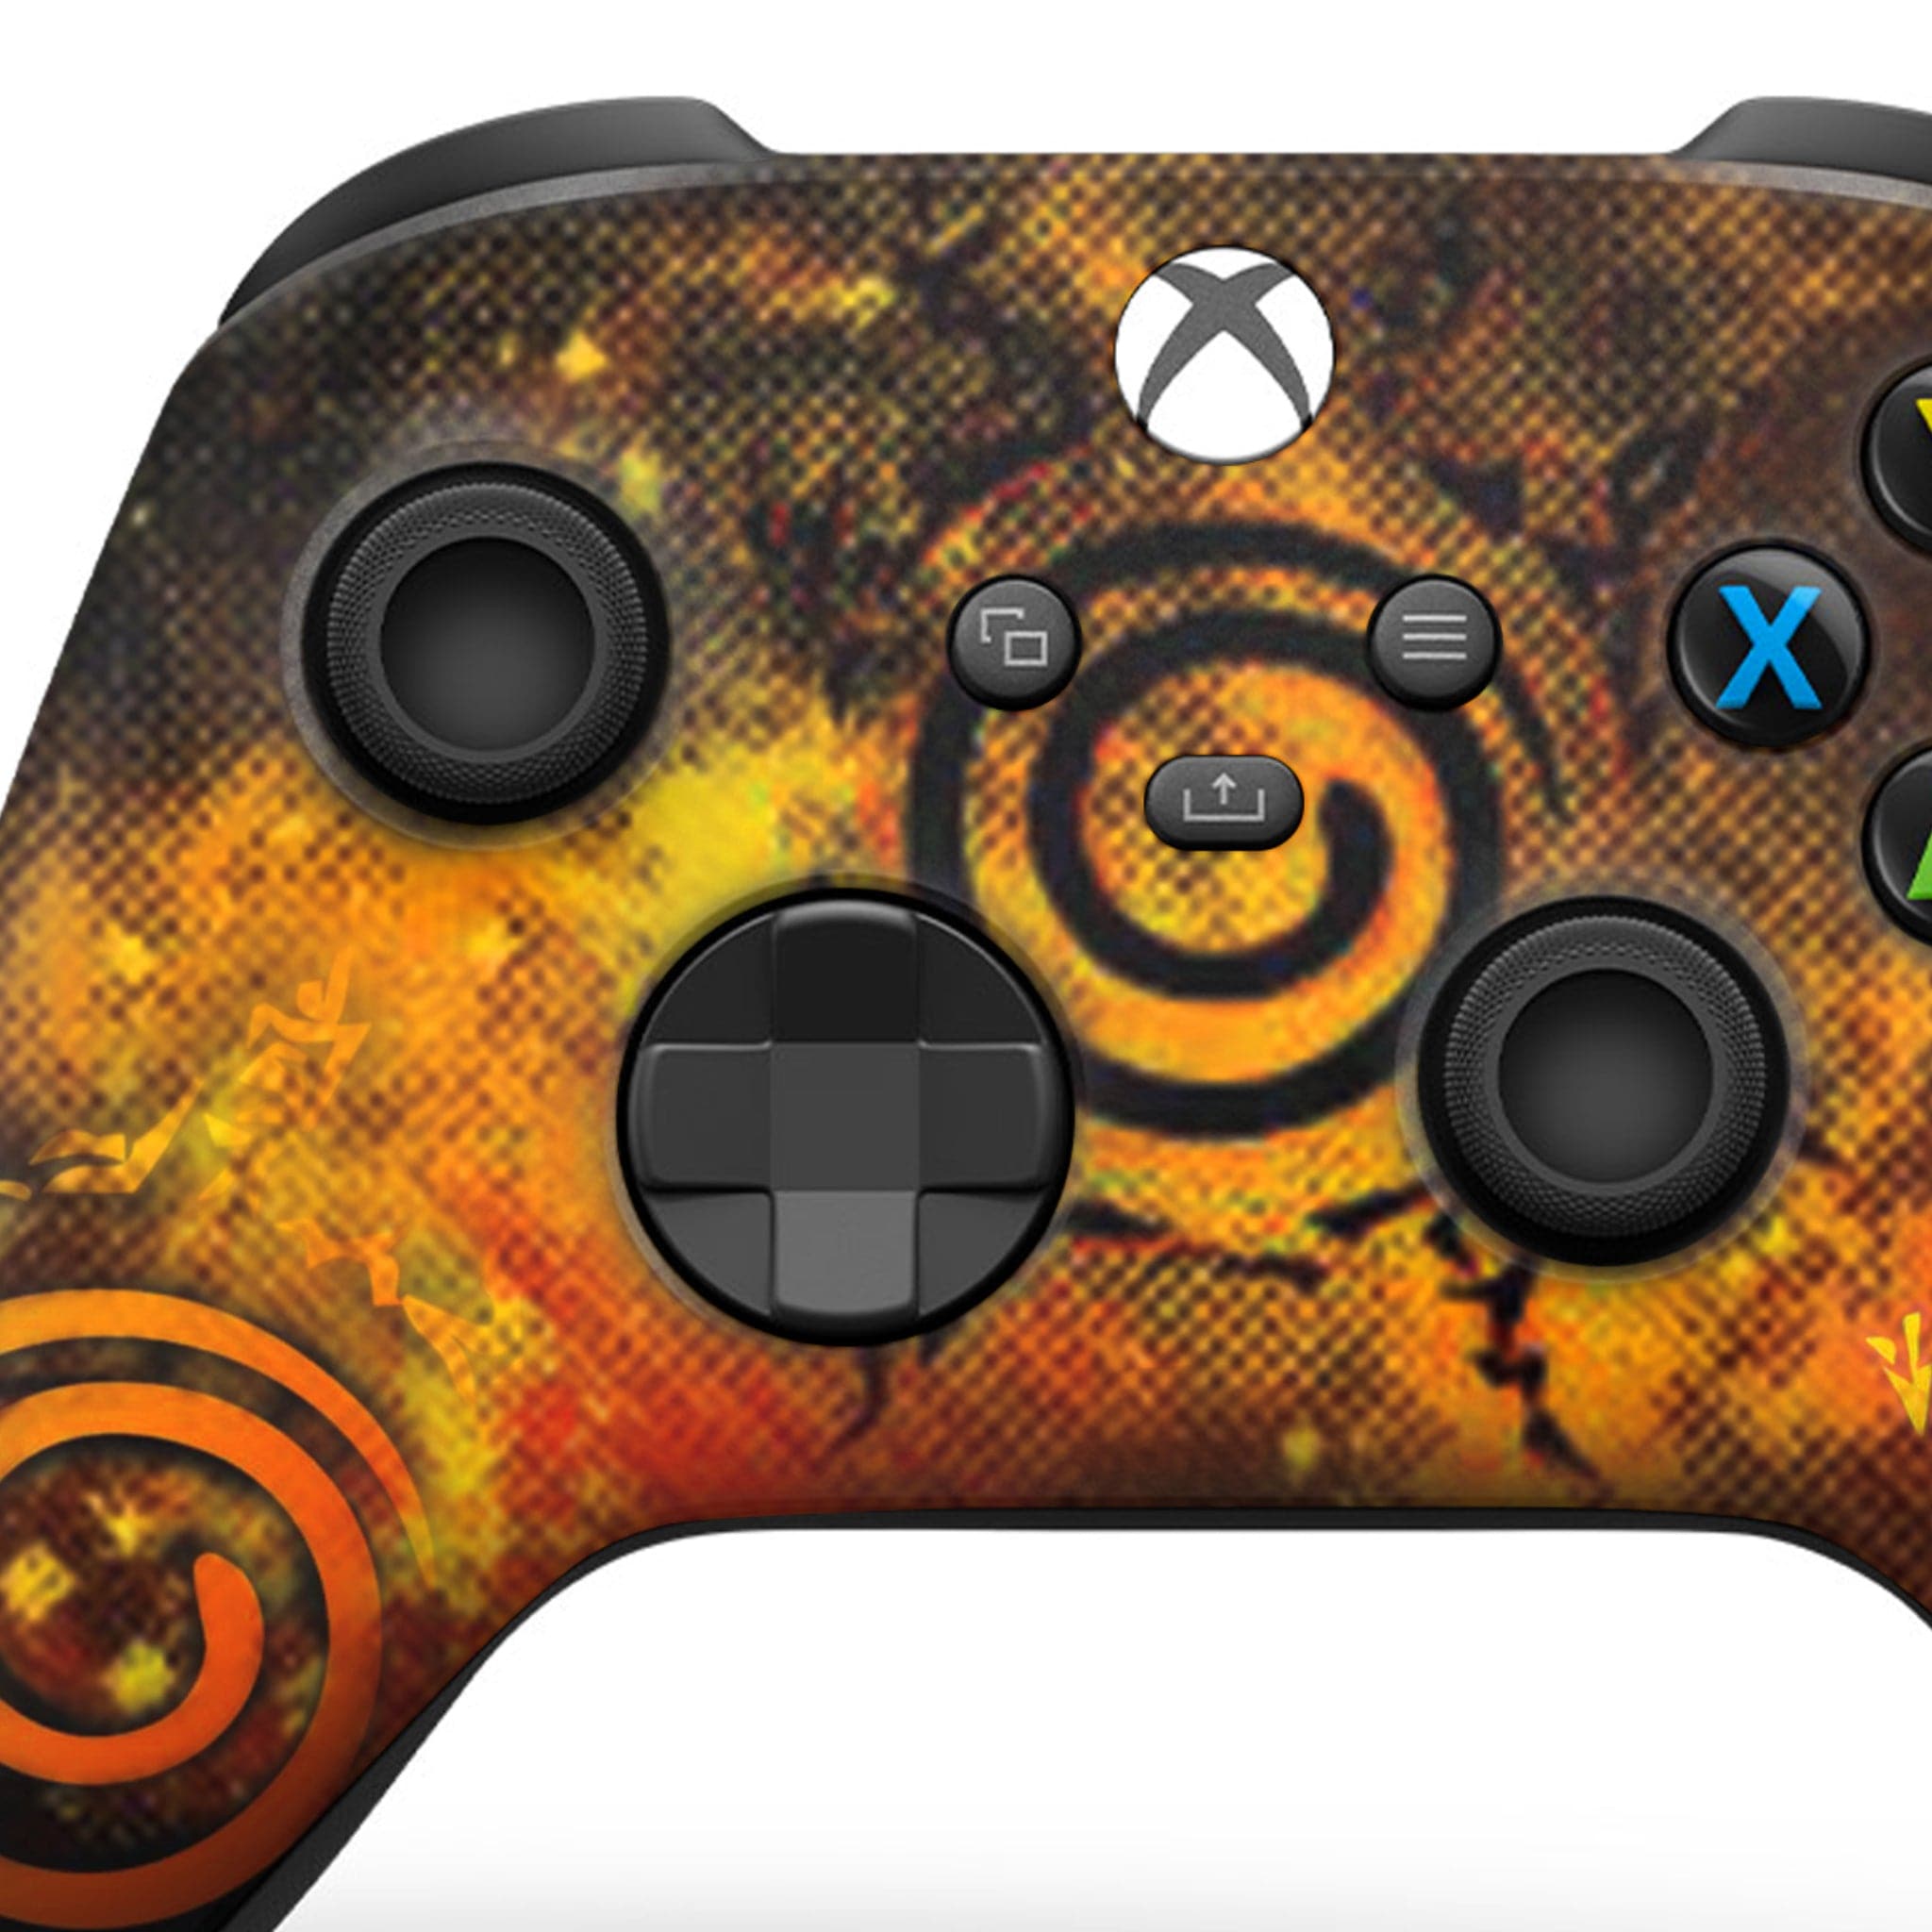 Naruto Sealing Mark Xbox Series X Controller: Microsoft Xbox Series X Wireless Controller